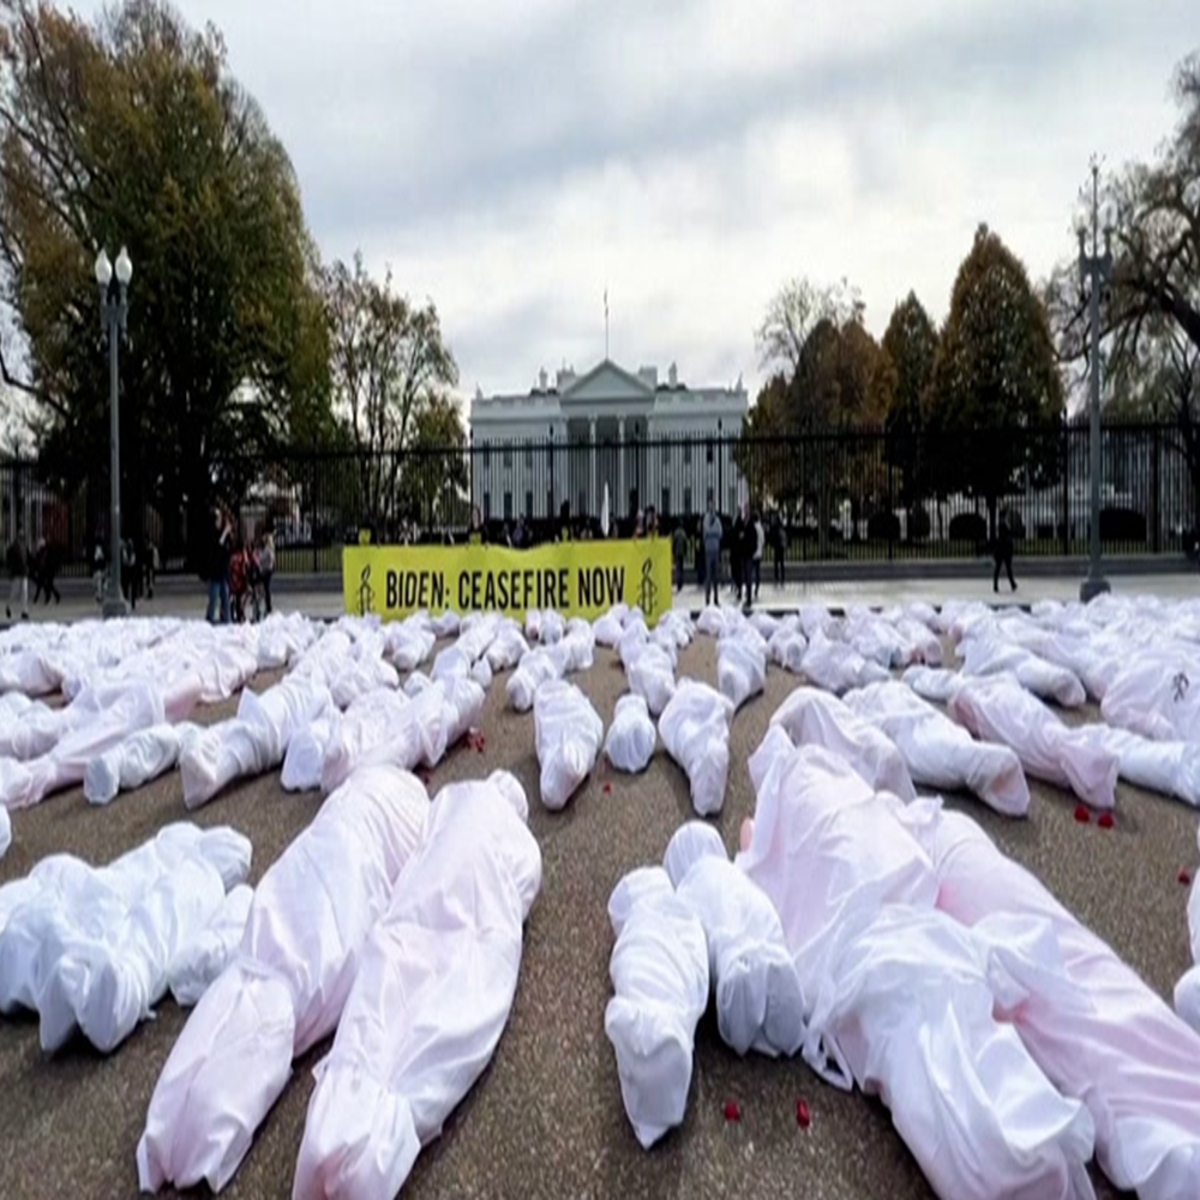 Crisis Actors, Fake Body Bags: False Claims About Ukraine War Go Viral